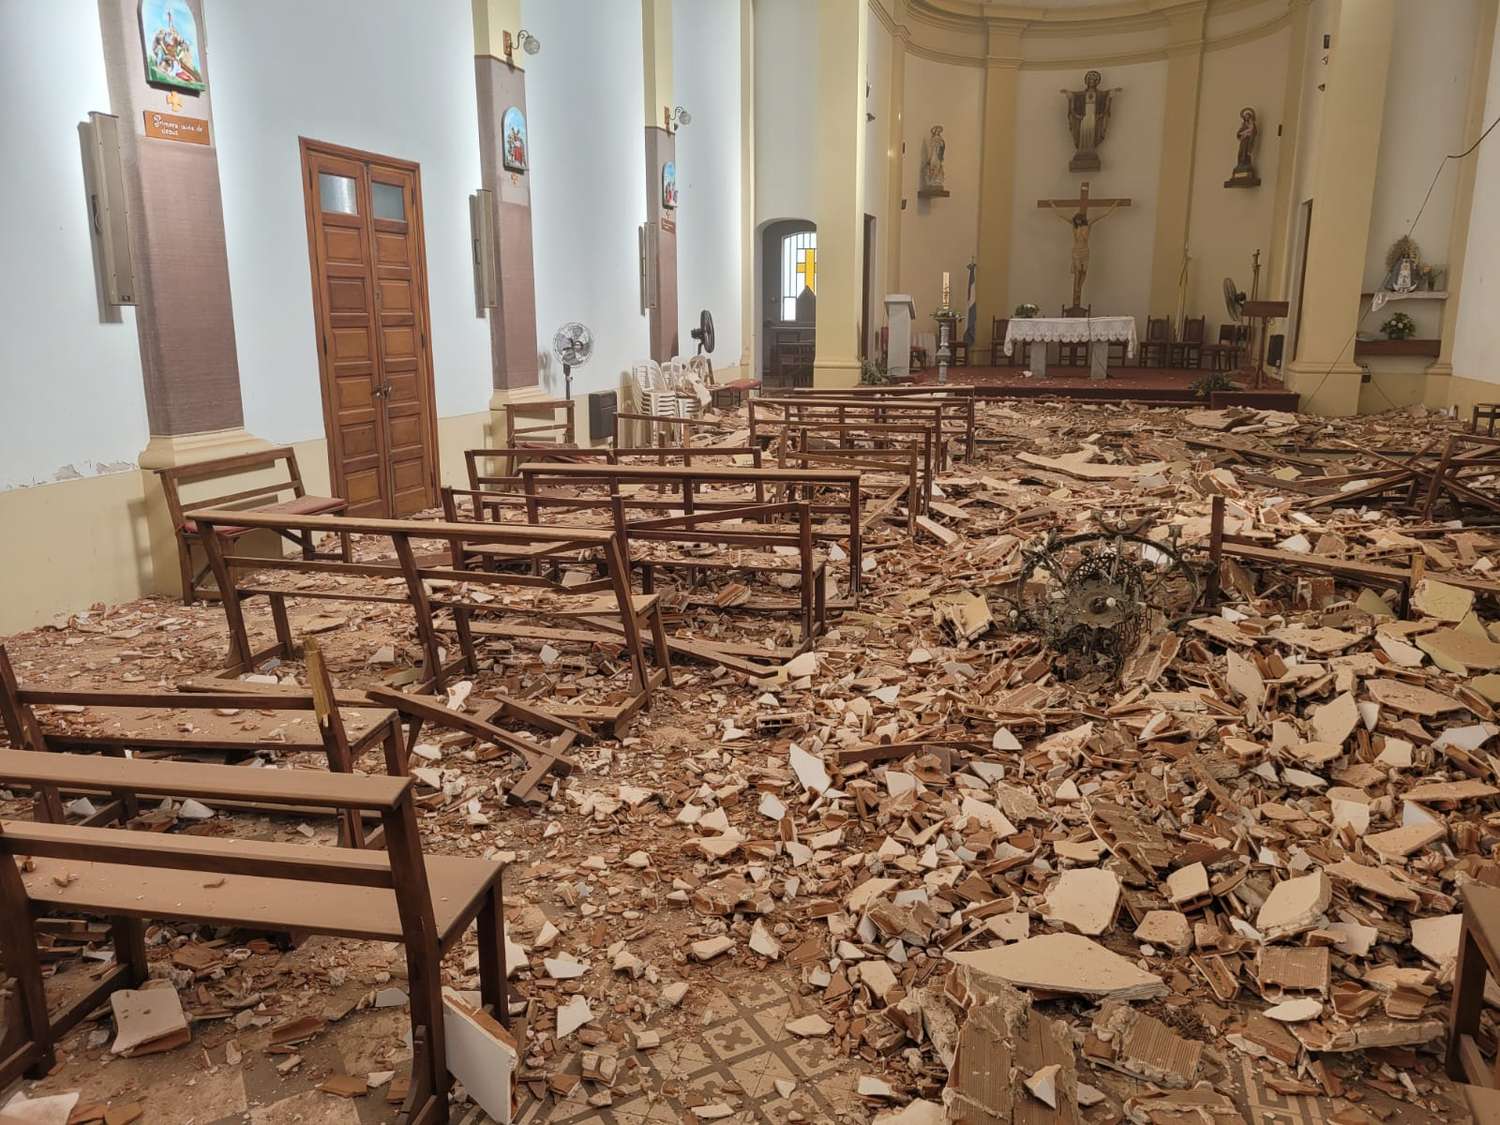 Cayó parte de la mampostería del techo de la Iglesia de Vedia: Ocurrió después de la misa